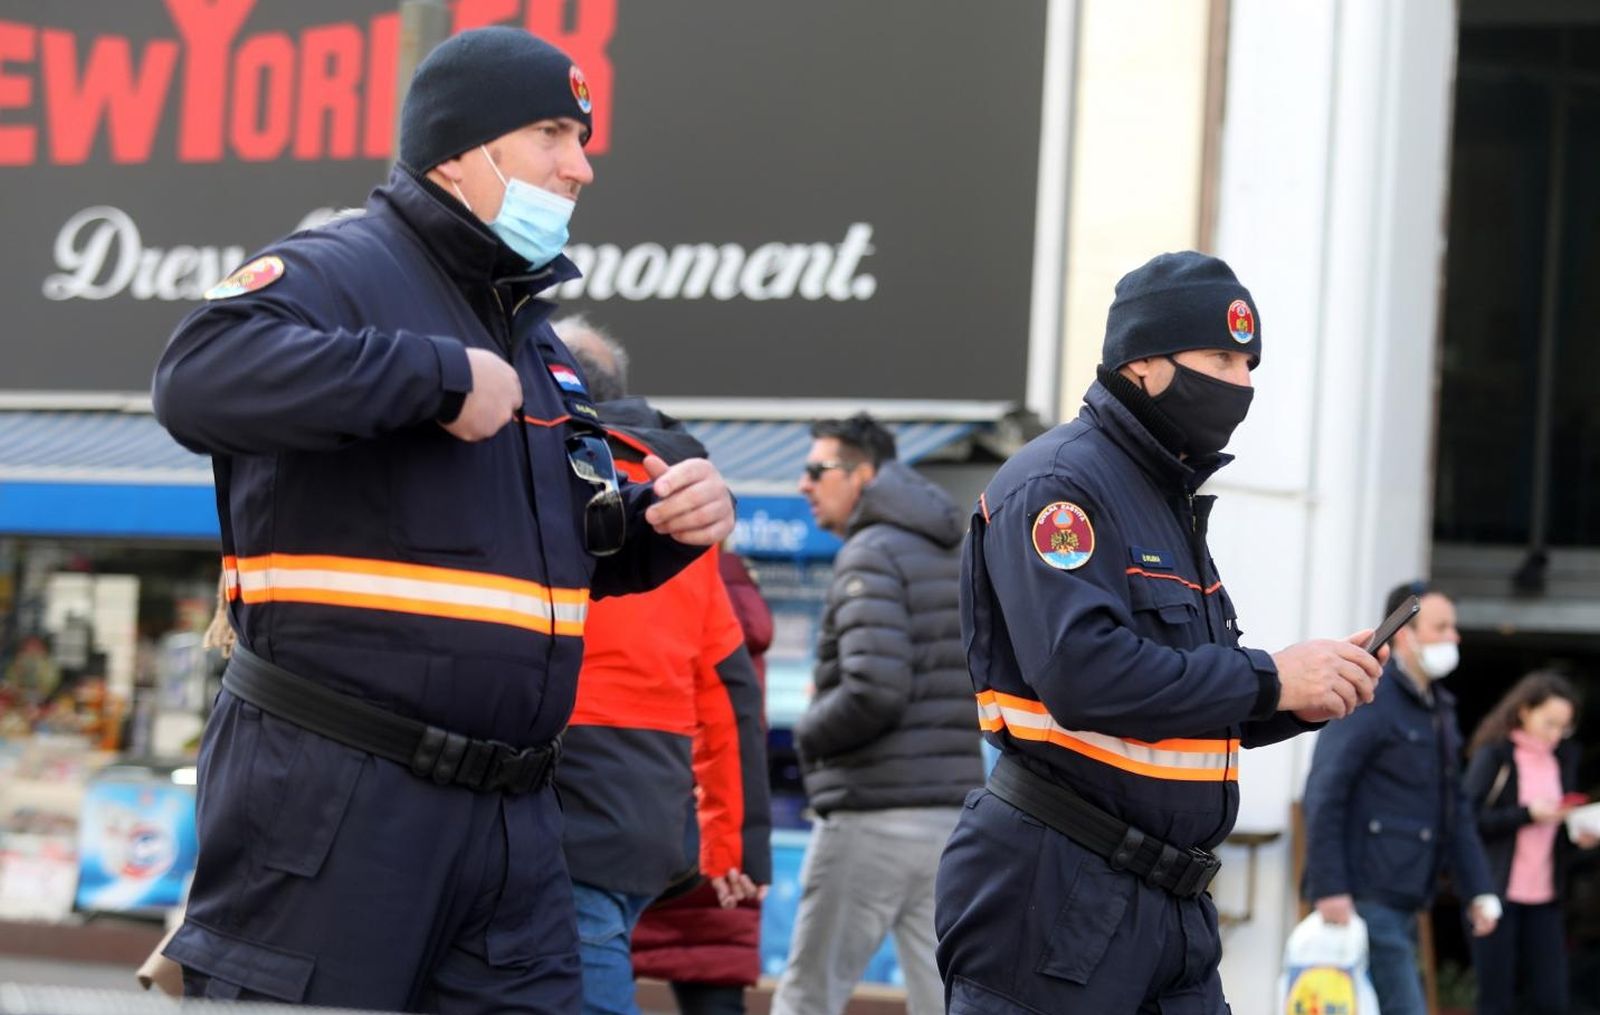 23.03.2021., Rijeka - Pripadnici Civilne zastite u patroli centrom grada.
Photo: Goran Kovacic/PIXSELL